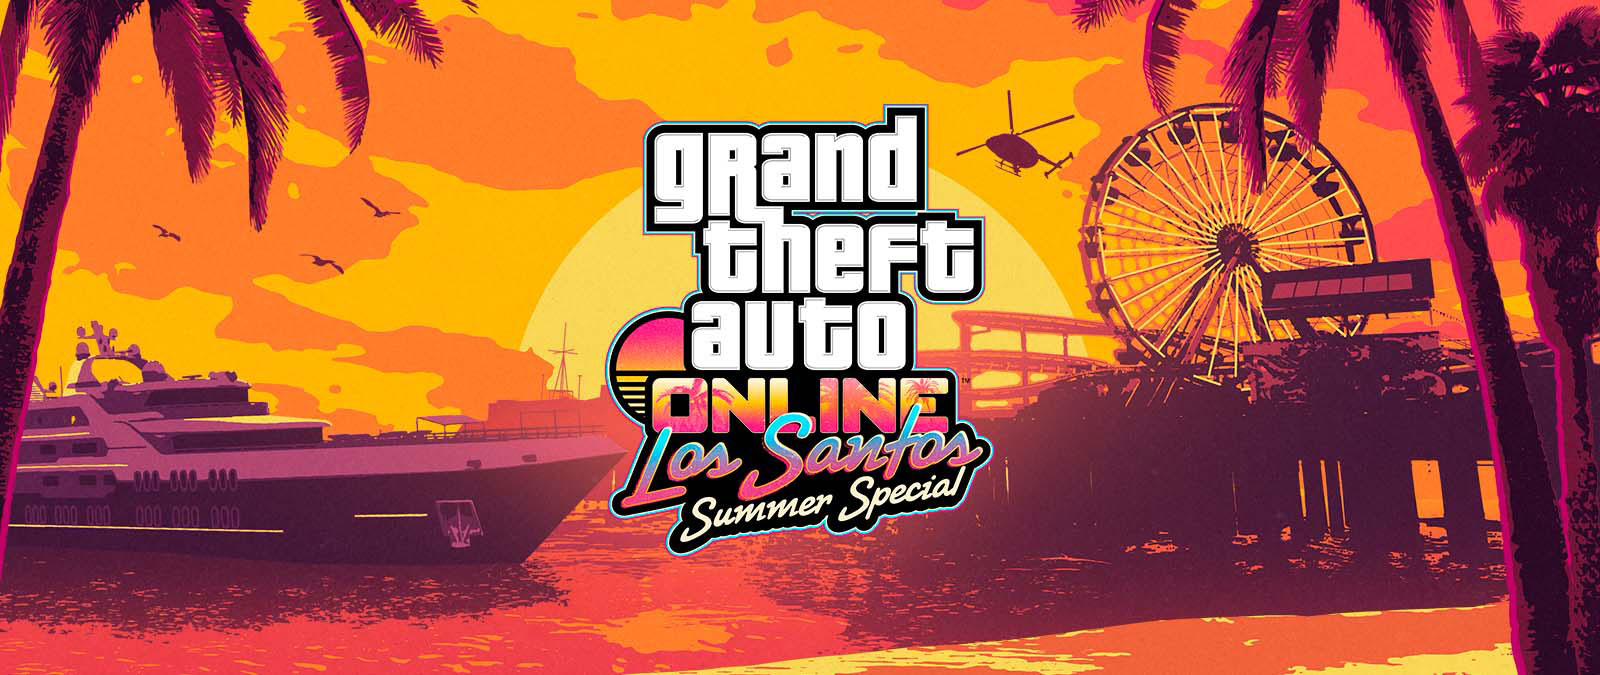 Grand Theft Auto Online. Especial de verão de Los Santos. Um iate, uma roda gigante e um helicóptero contra o pôr do sol